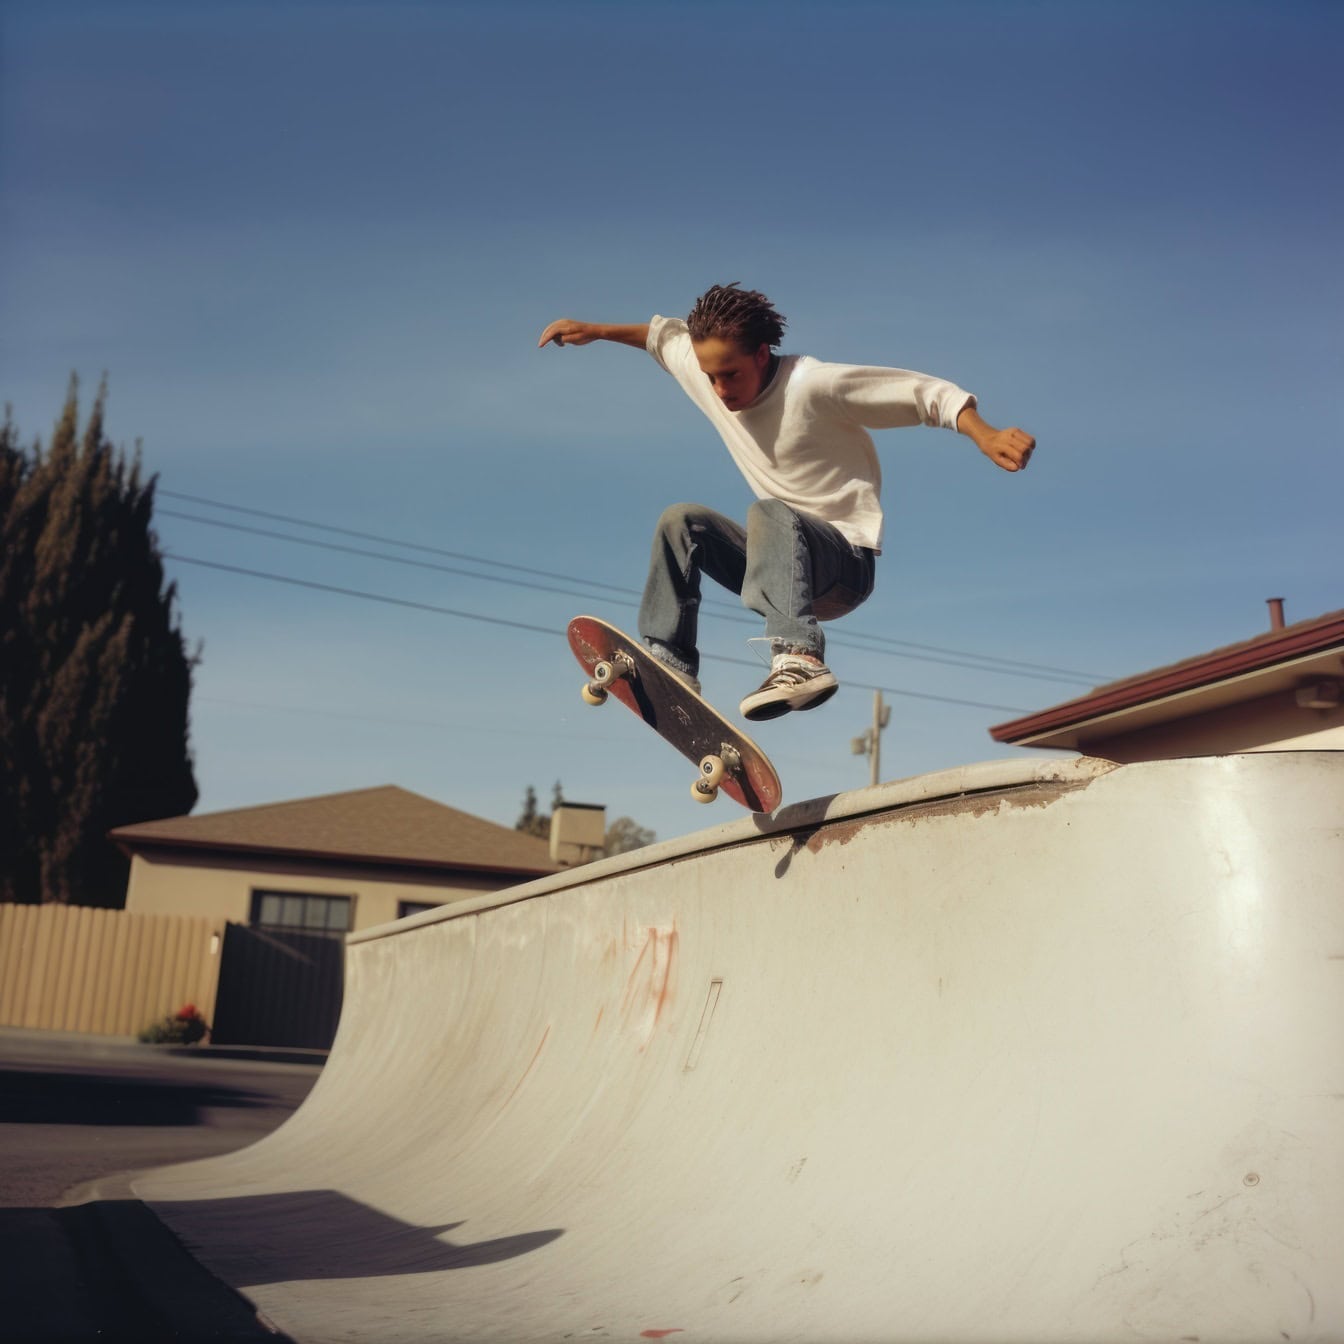 Adolescente com rosto crocked pula com um skate em uma rampa deslizante, um exemplo de uma foto ruim gerada por Ai